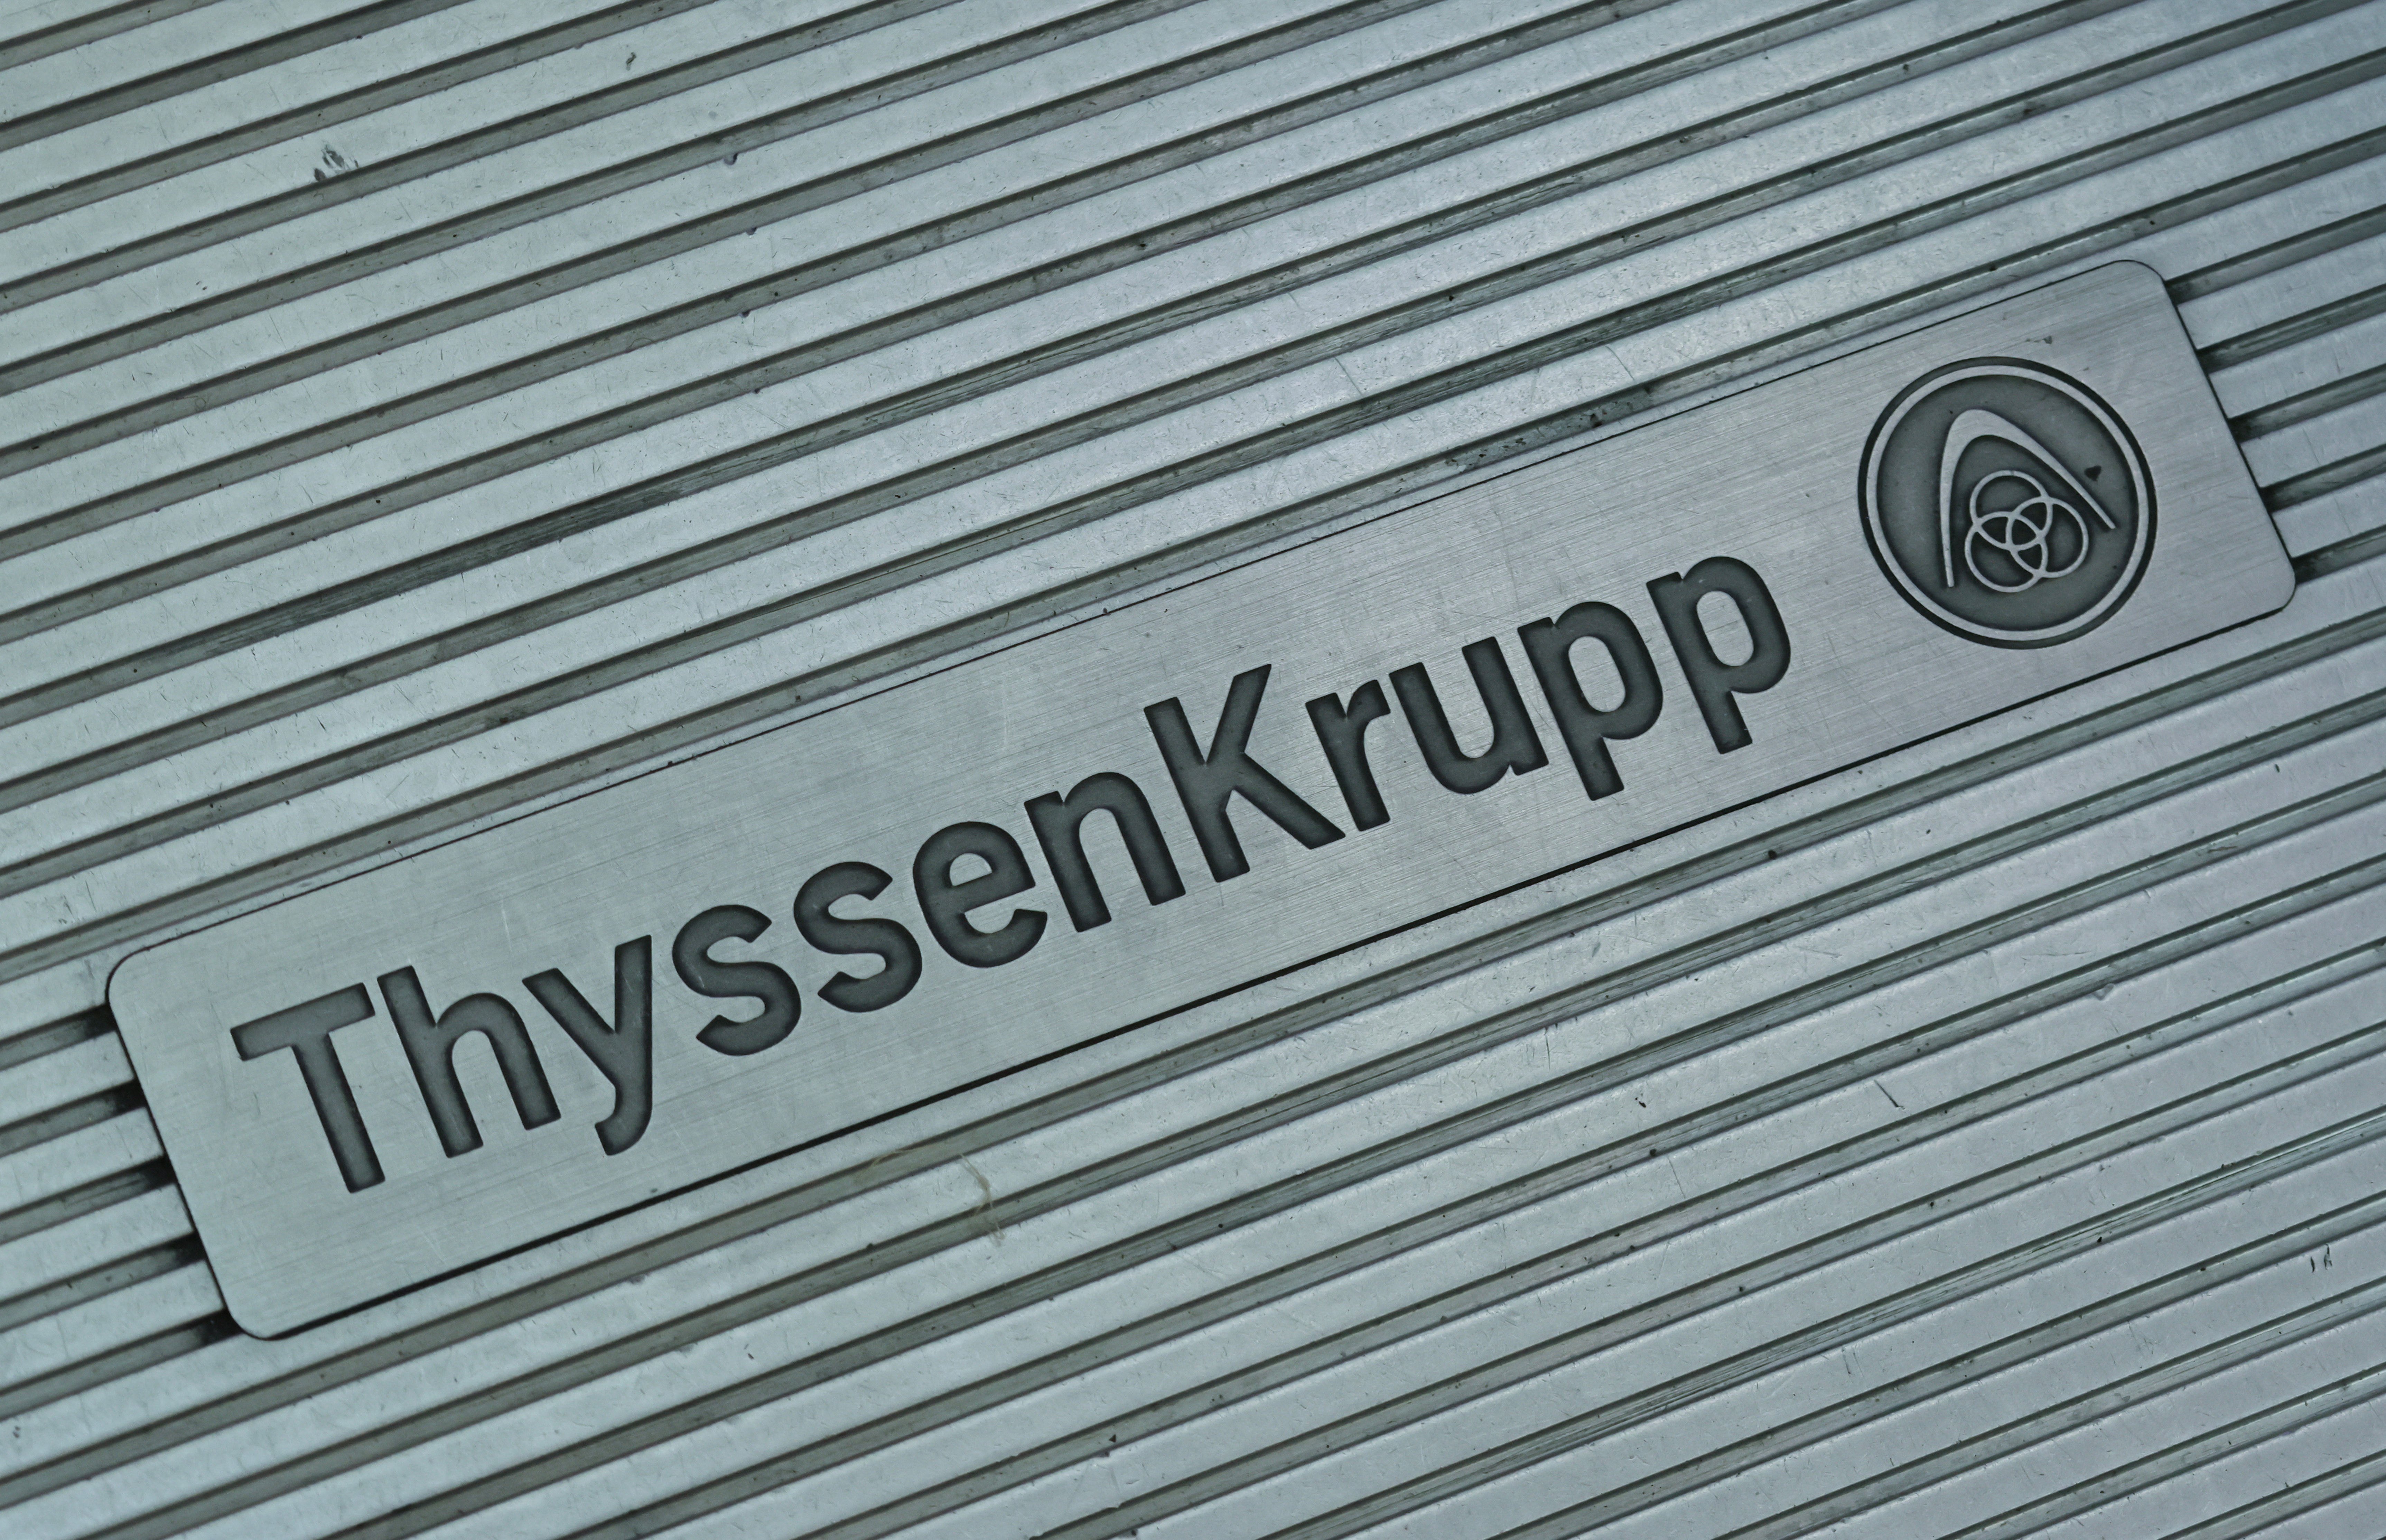 ThyssenKrupp logo in Doha